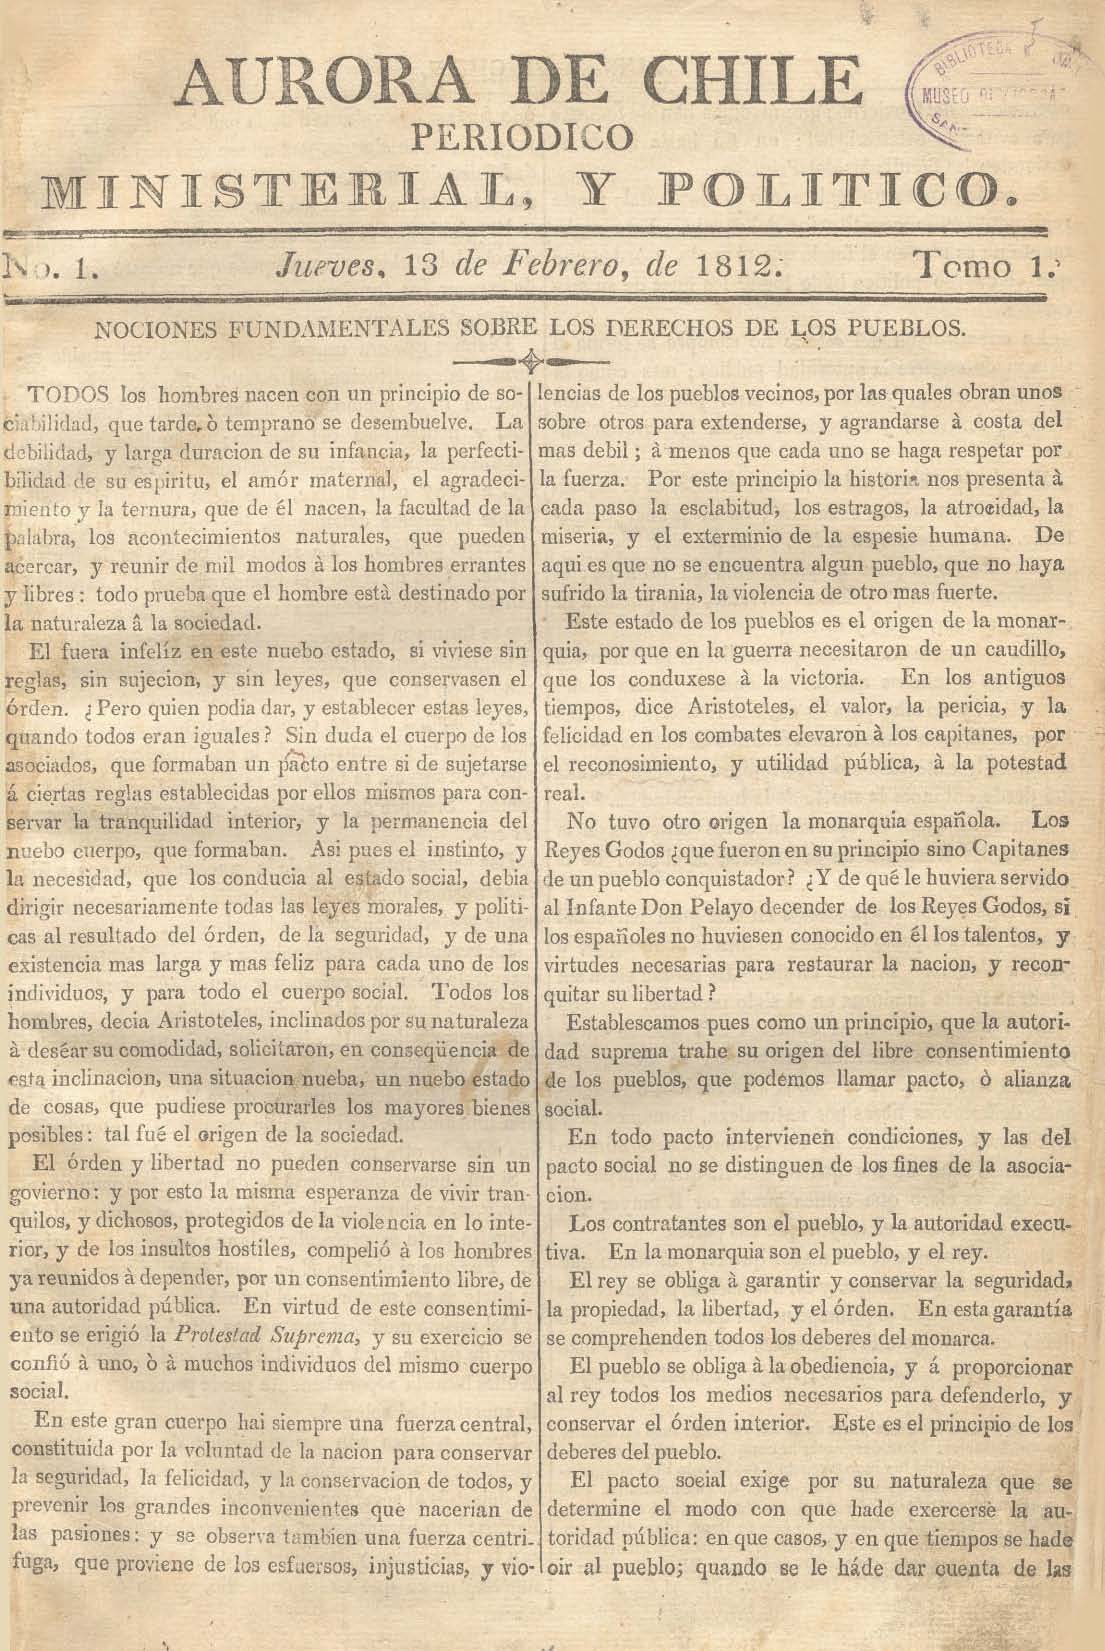 											Ver Núm. 4 (1813): Tomo II. Jueves 28 de Enero
										